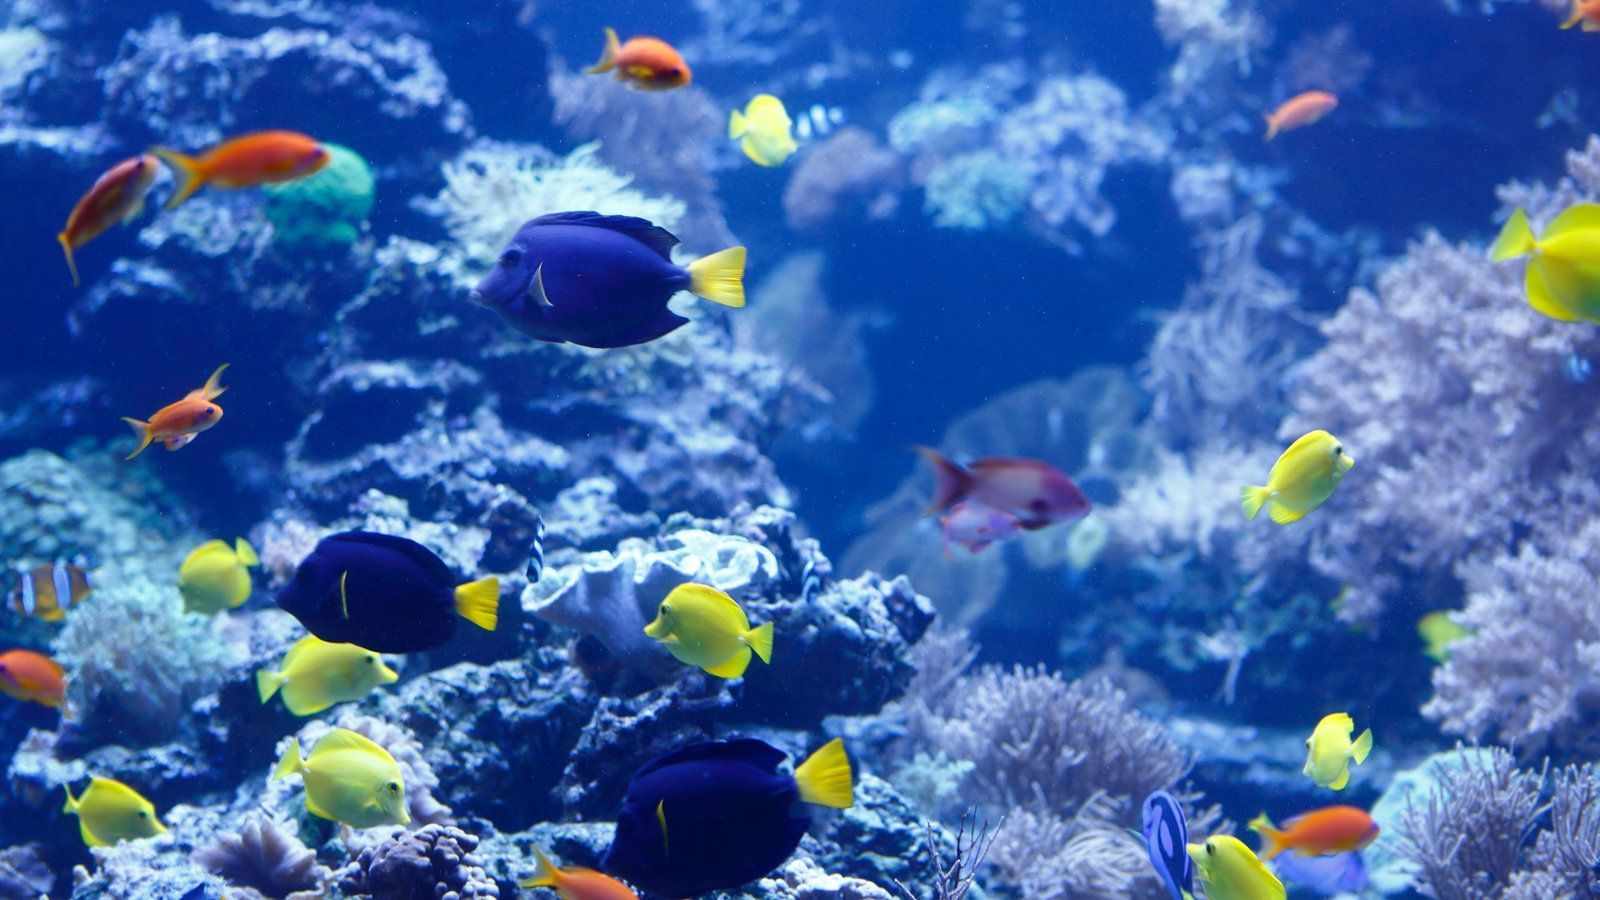  Aquarium Hintergrundbild 1600x900. Tiere im Wasser: Aquarien im Wasser